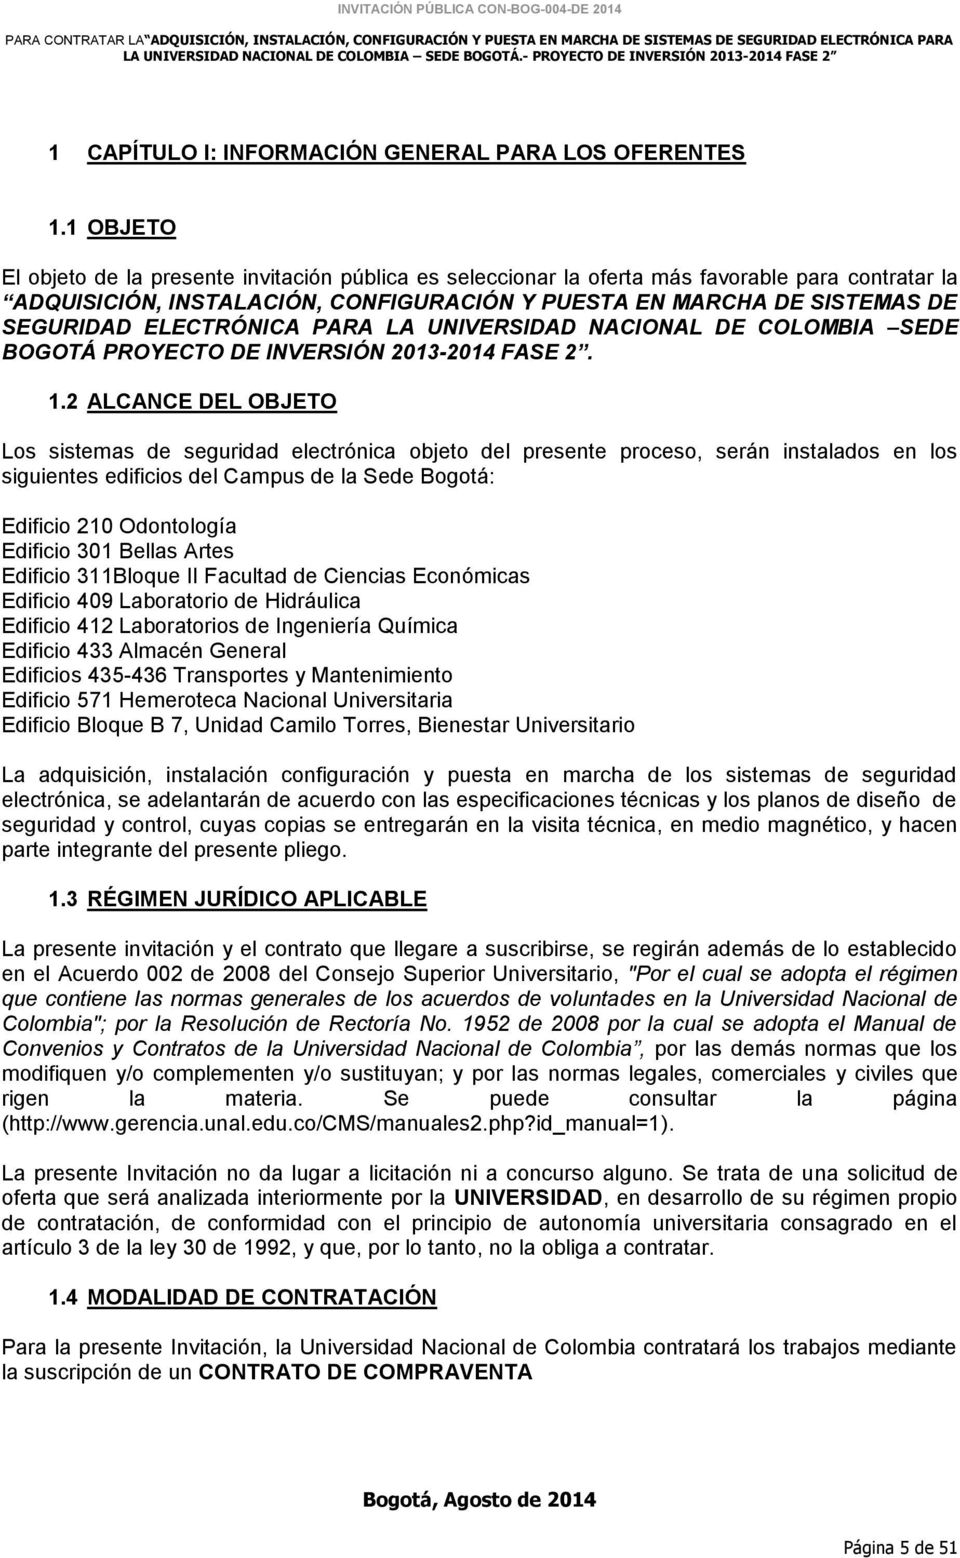 ELECTRÓNICA PARA LA UNIVERSIDAD NACIONAL DE COLOMBIA SEDE BOGOTÁ PROYECTO DE INVERSIÓN 2013-2014 FASE 2. 1.